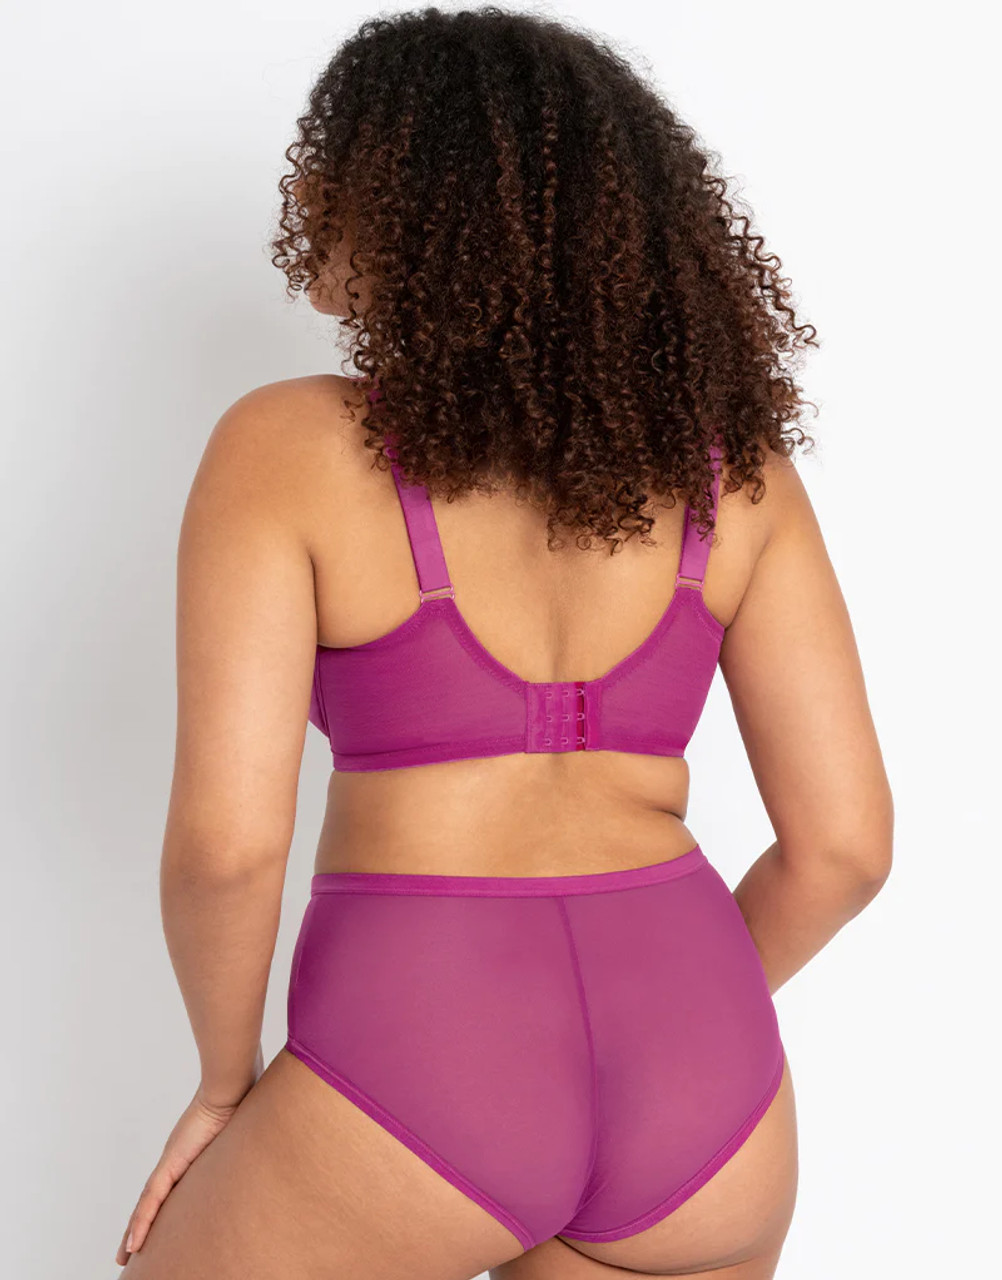 Women's Bras Sale purple Size 32G, Lingerie